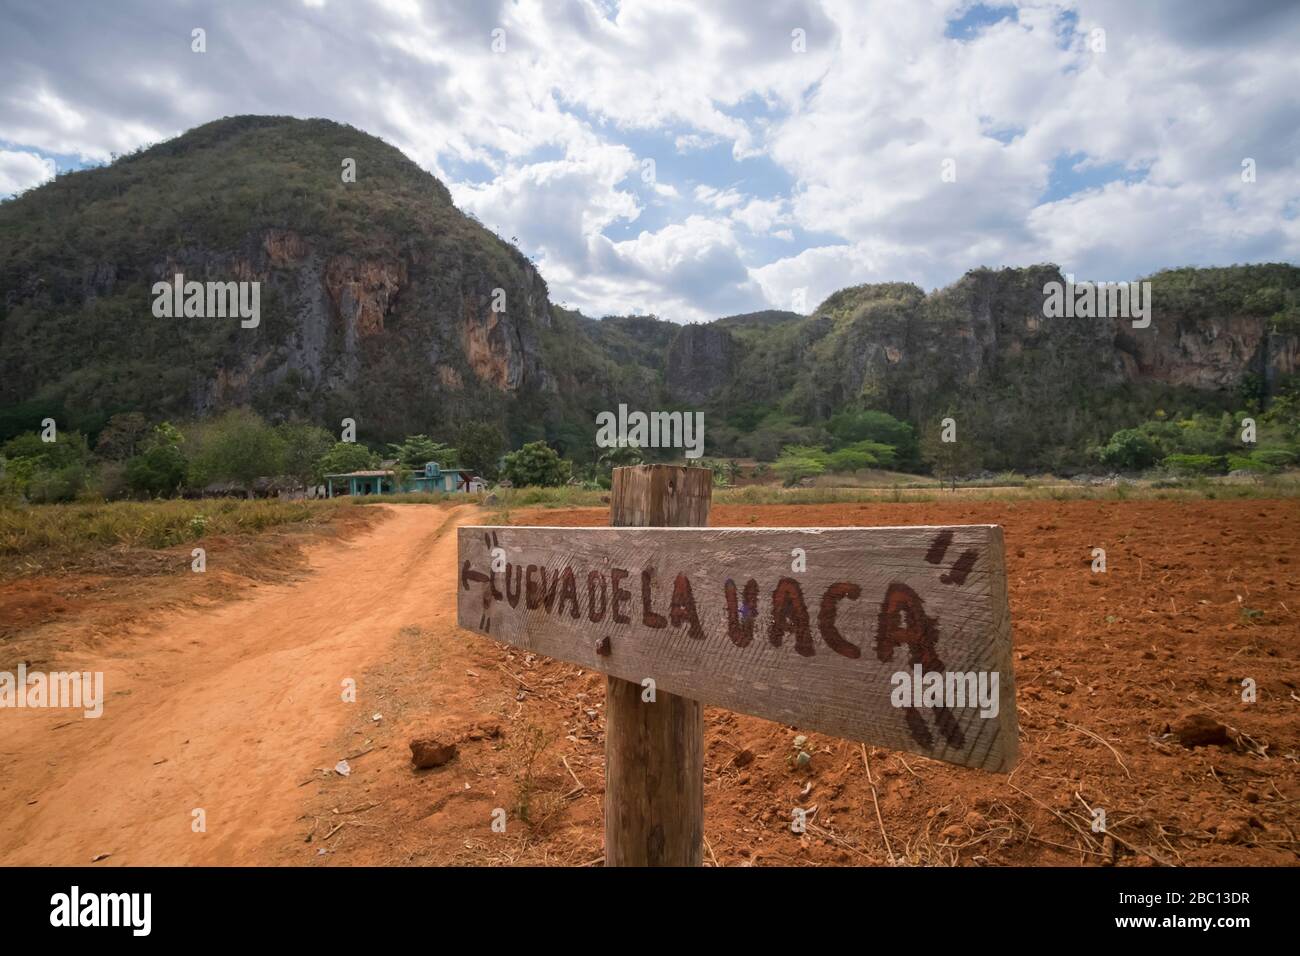 Sign at dirt road, Valle de Vinales, Pinar del Rio, Cuba Stock Photo